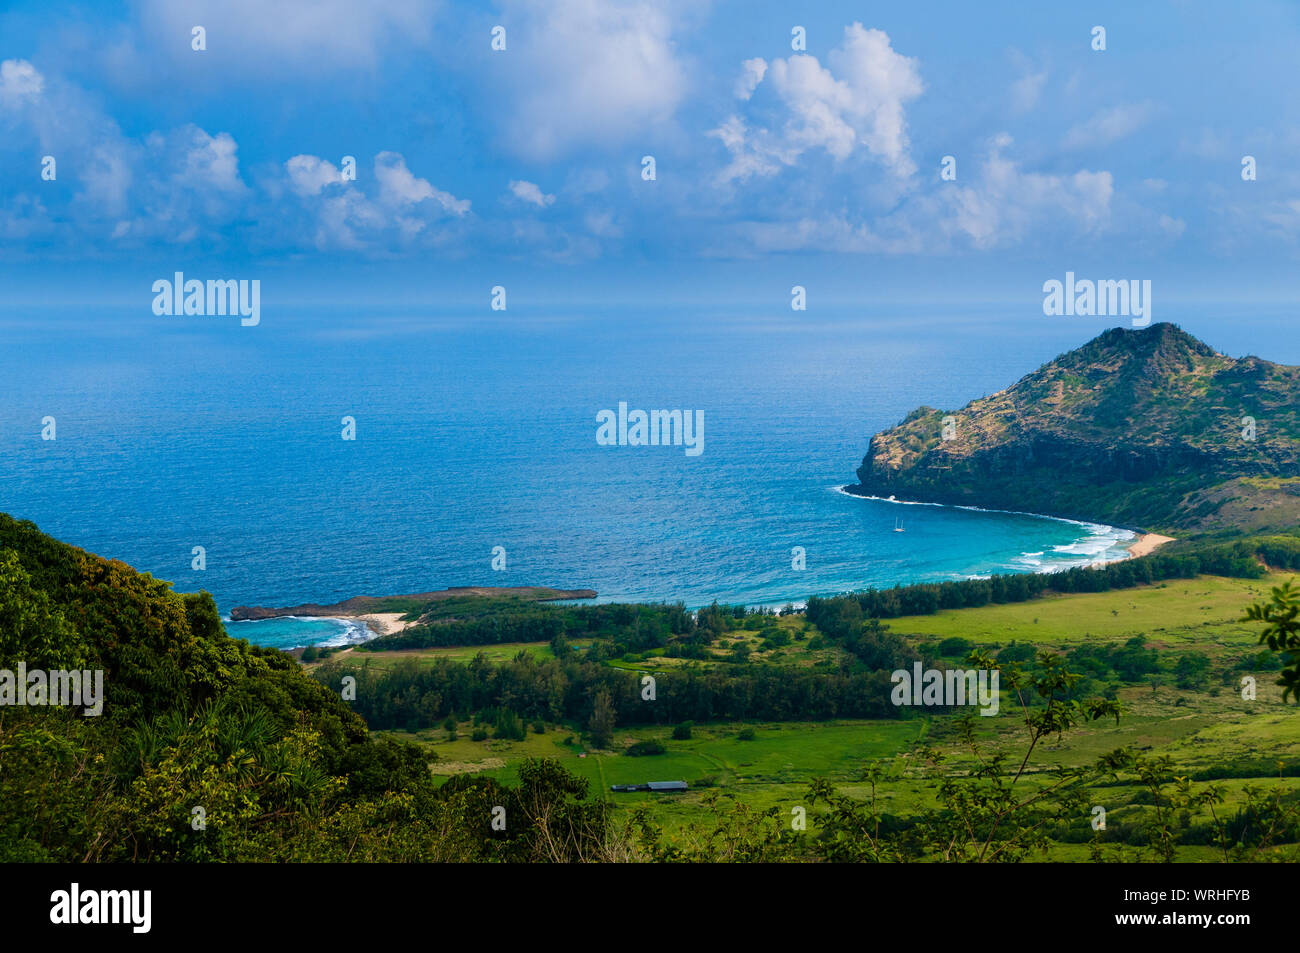 Luftbild mit Blick auf die tropische Insel Kauai und den Pazifischen Ozean, Hawaii, USA Stockfoto